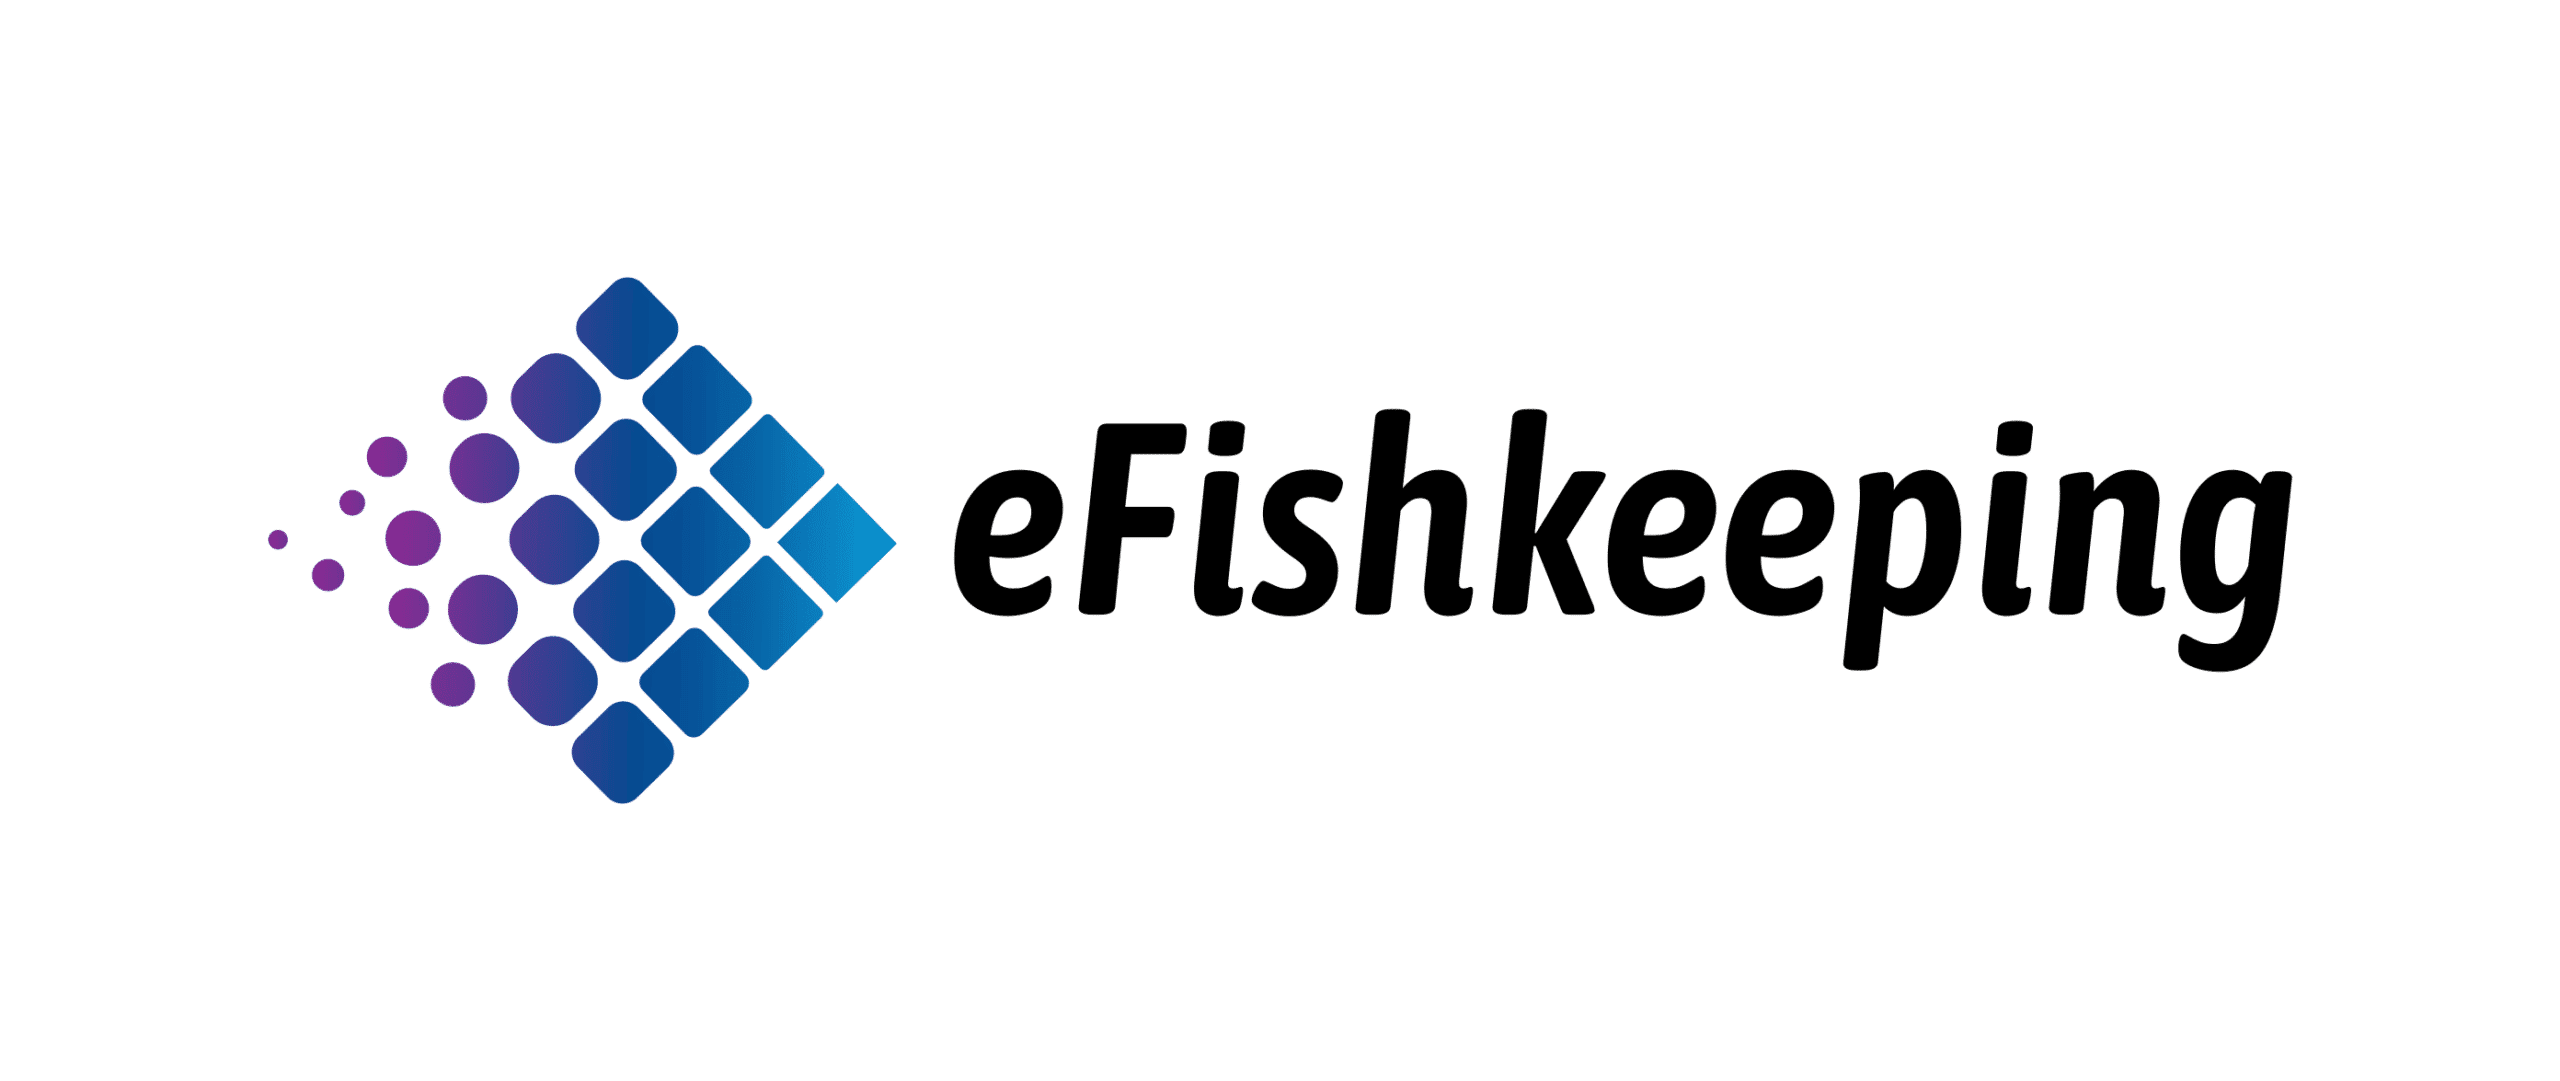 eFishkeeping